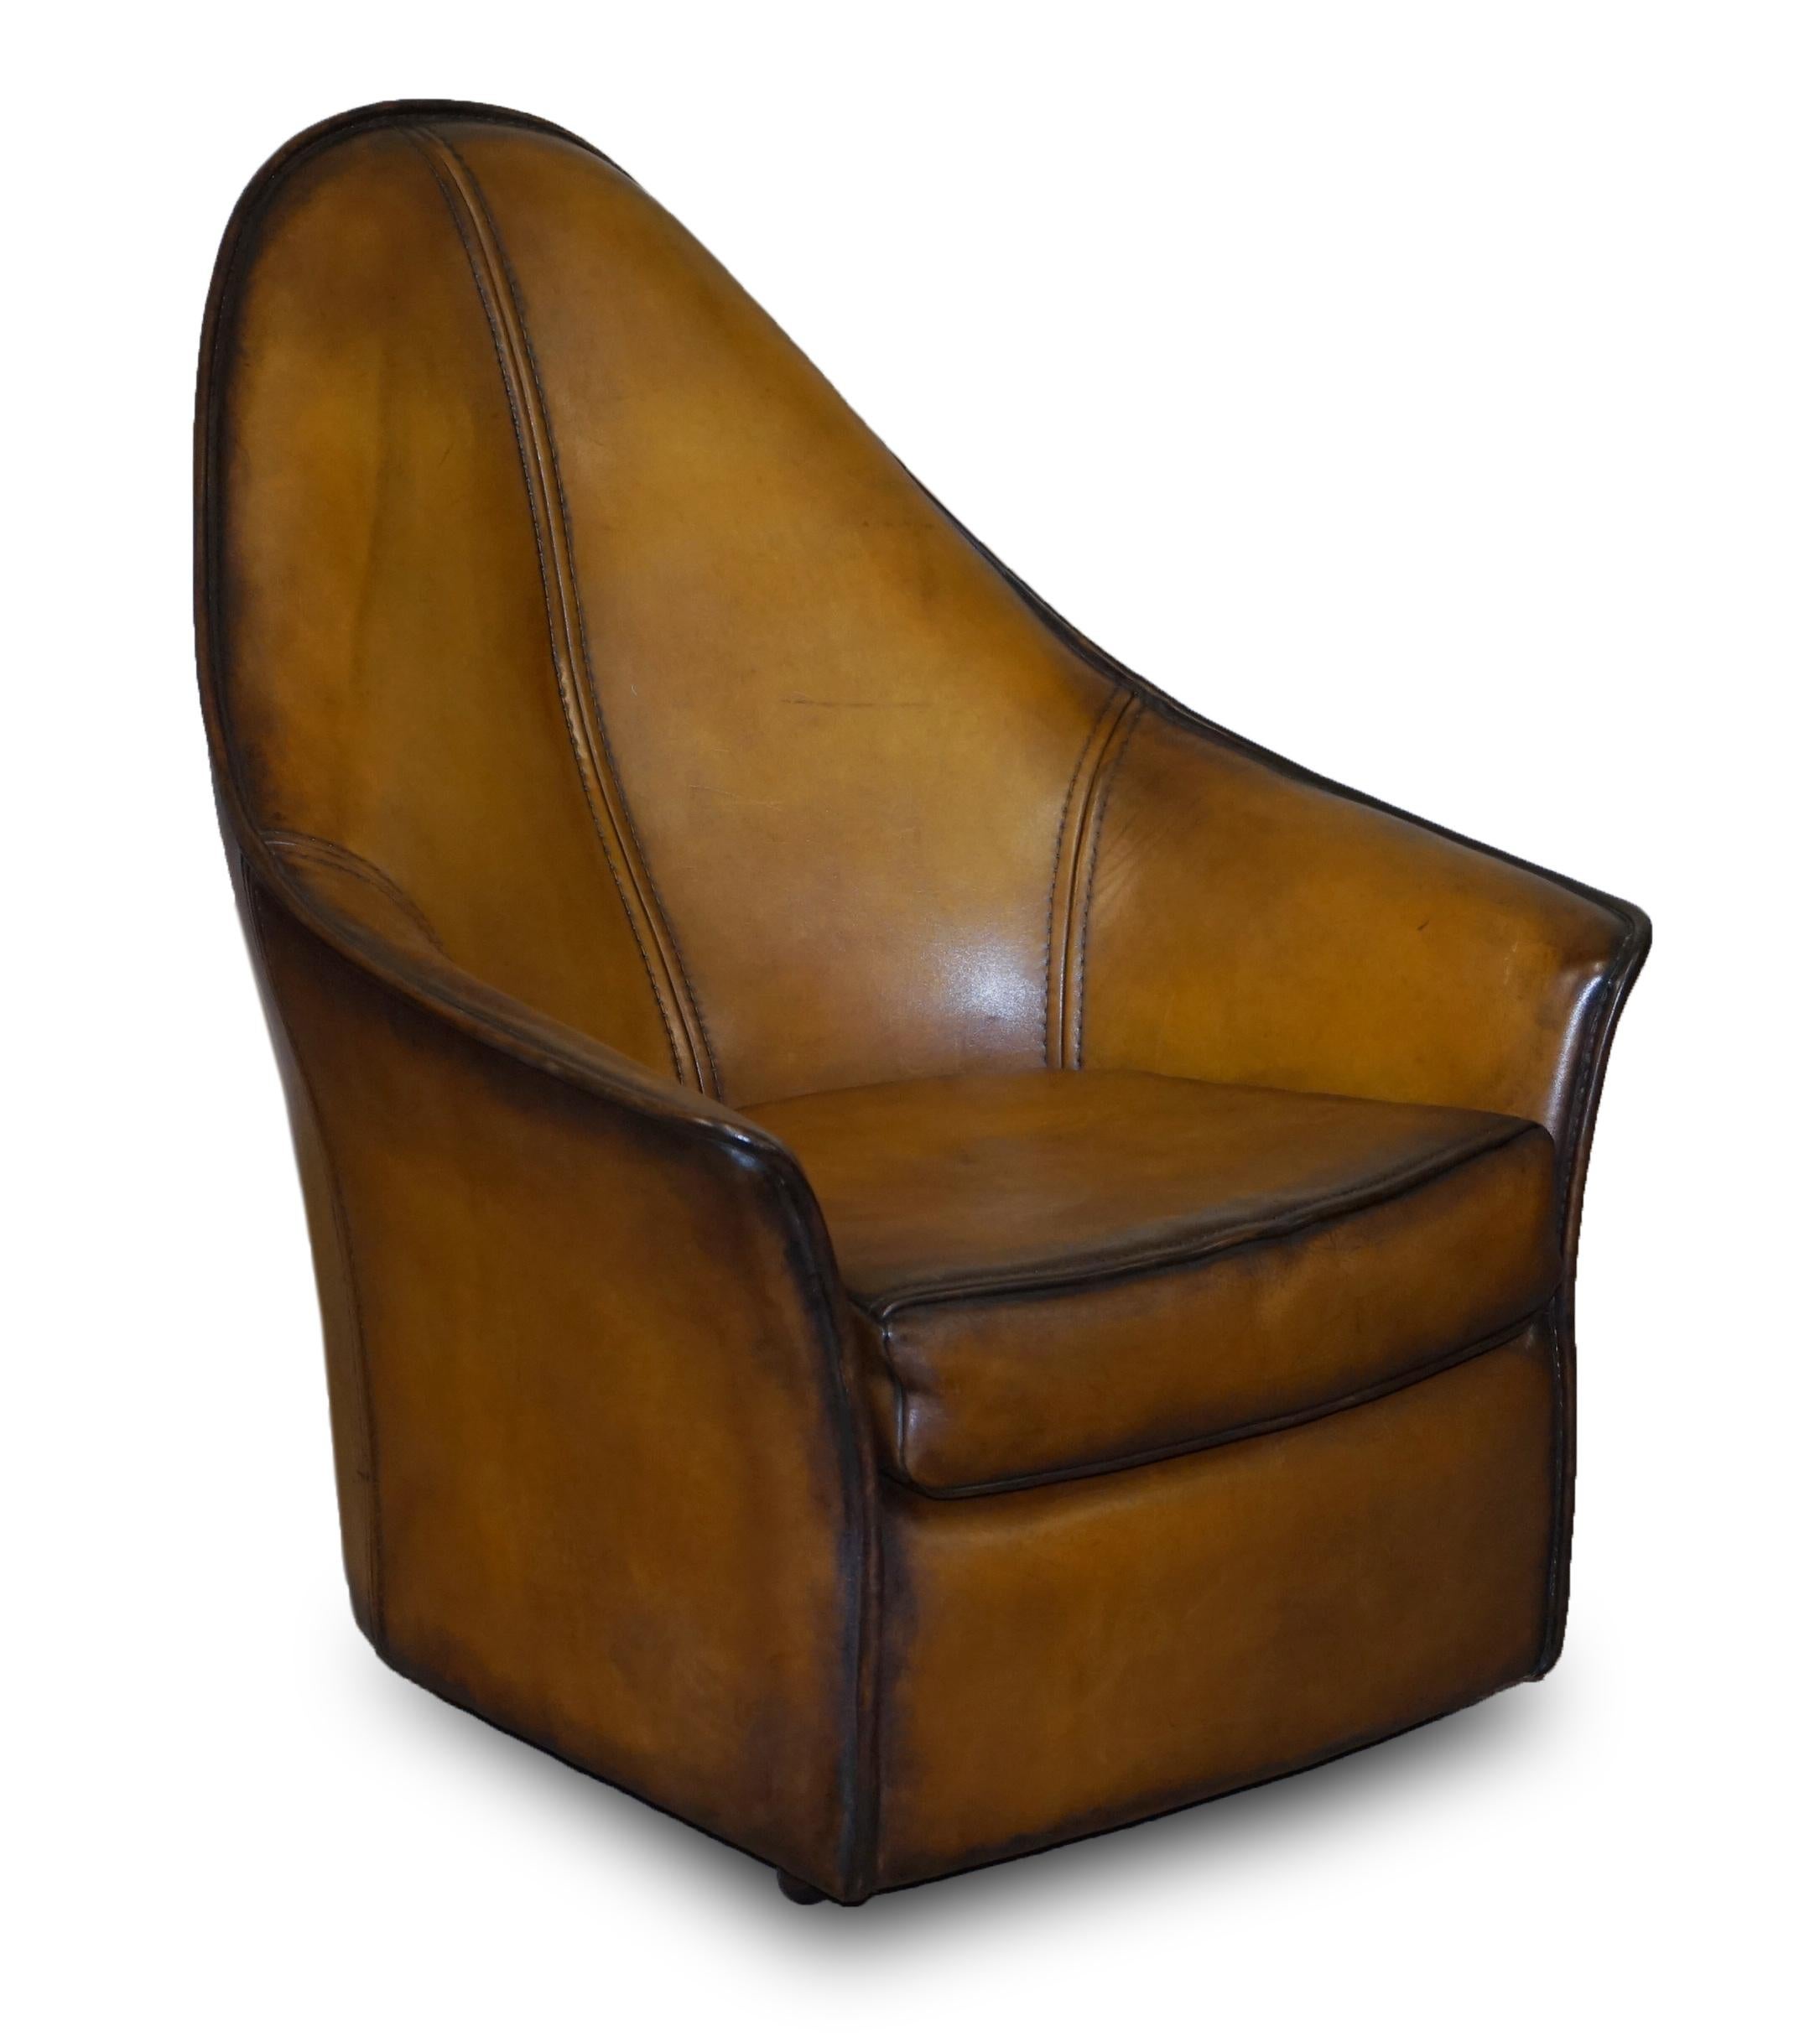 Nous sommes ravis d'offrir à la vente cette paire de fauteuils Art Moderne en cuir brun Cigar, entièrement restaurés, qui font partie d'une grande suite

Comme mentionné, ils font partie d'une suite, au total j'ai une paire de fauteuils, un canapé